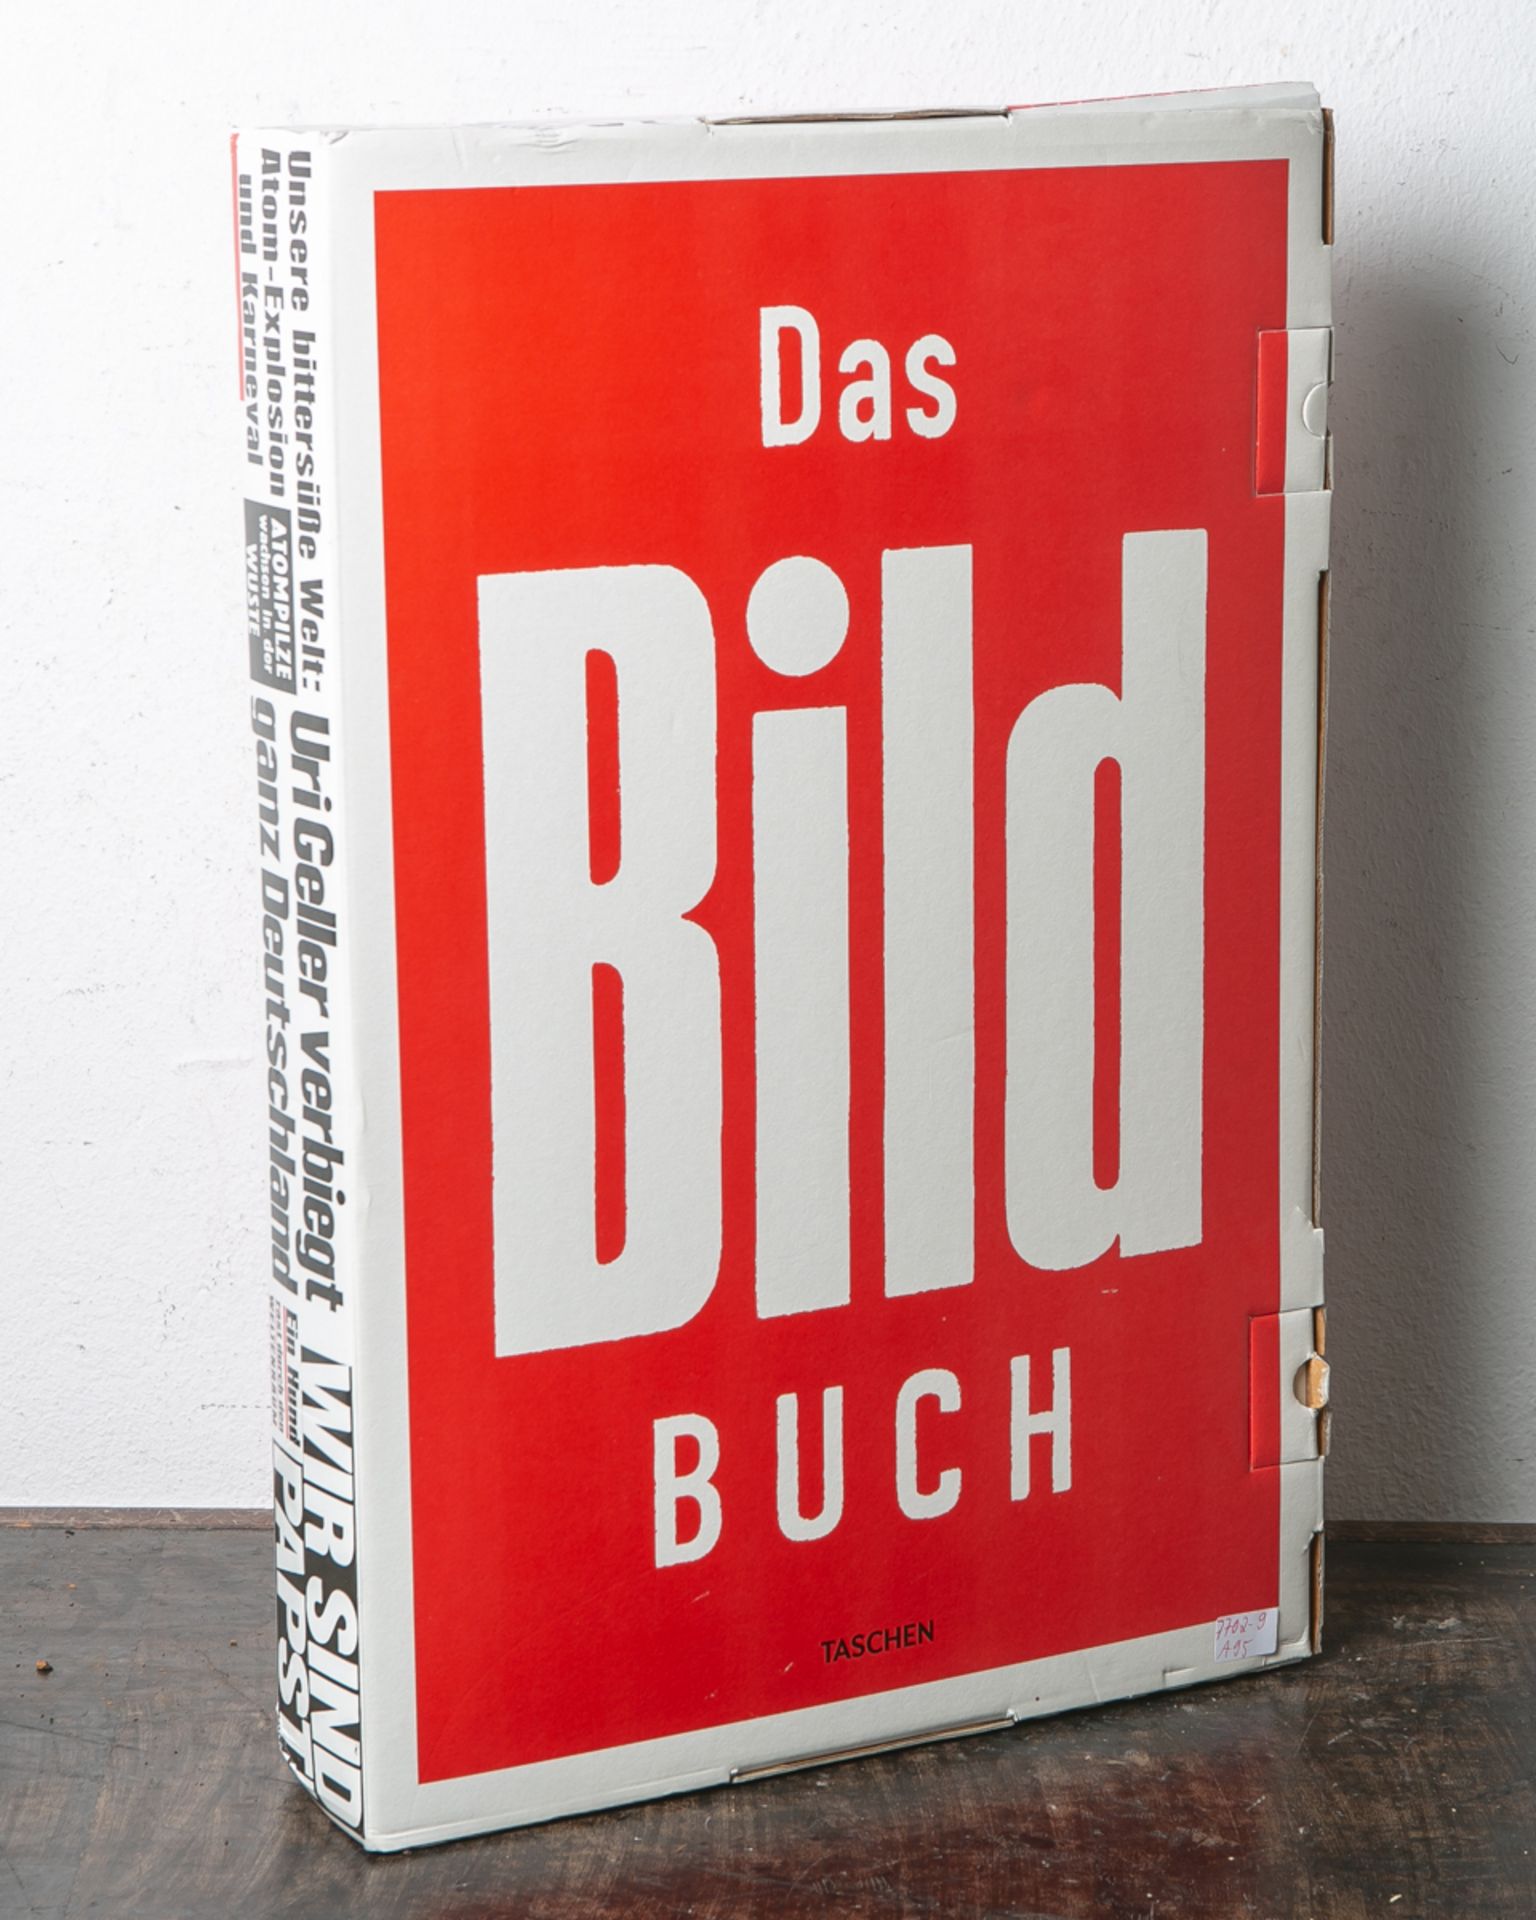 Diekmann, Kai (Hrsg.), "Das Bild Buch", mit Texten von Stefan Aust, Sebastian Turner,Ferdinand von